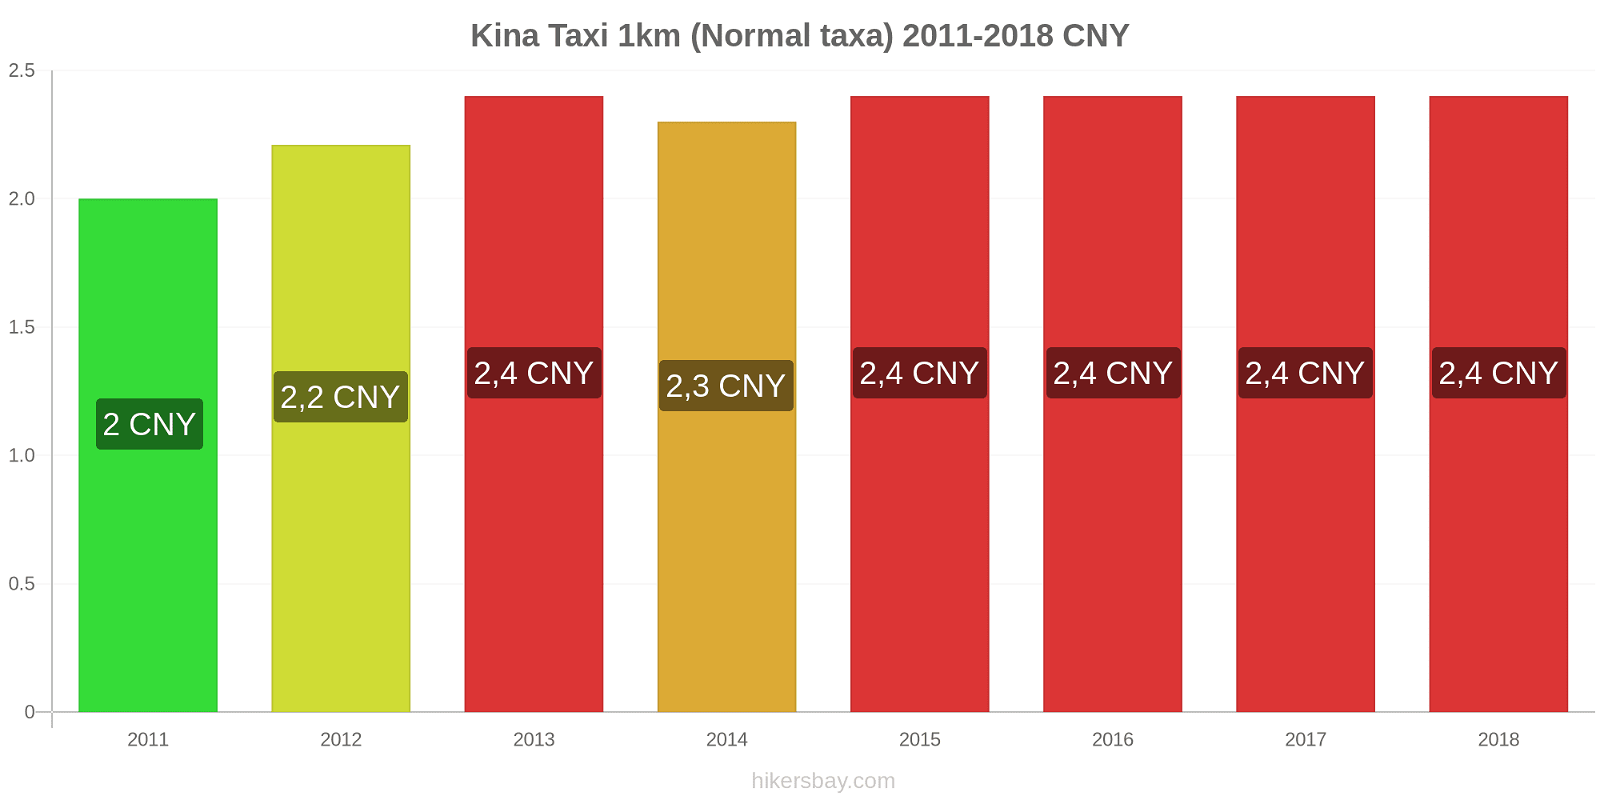 Kina prisändringar Taxi 1km (Normal taxa) hikersbay.com